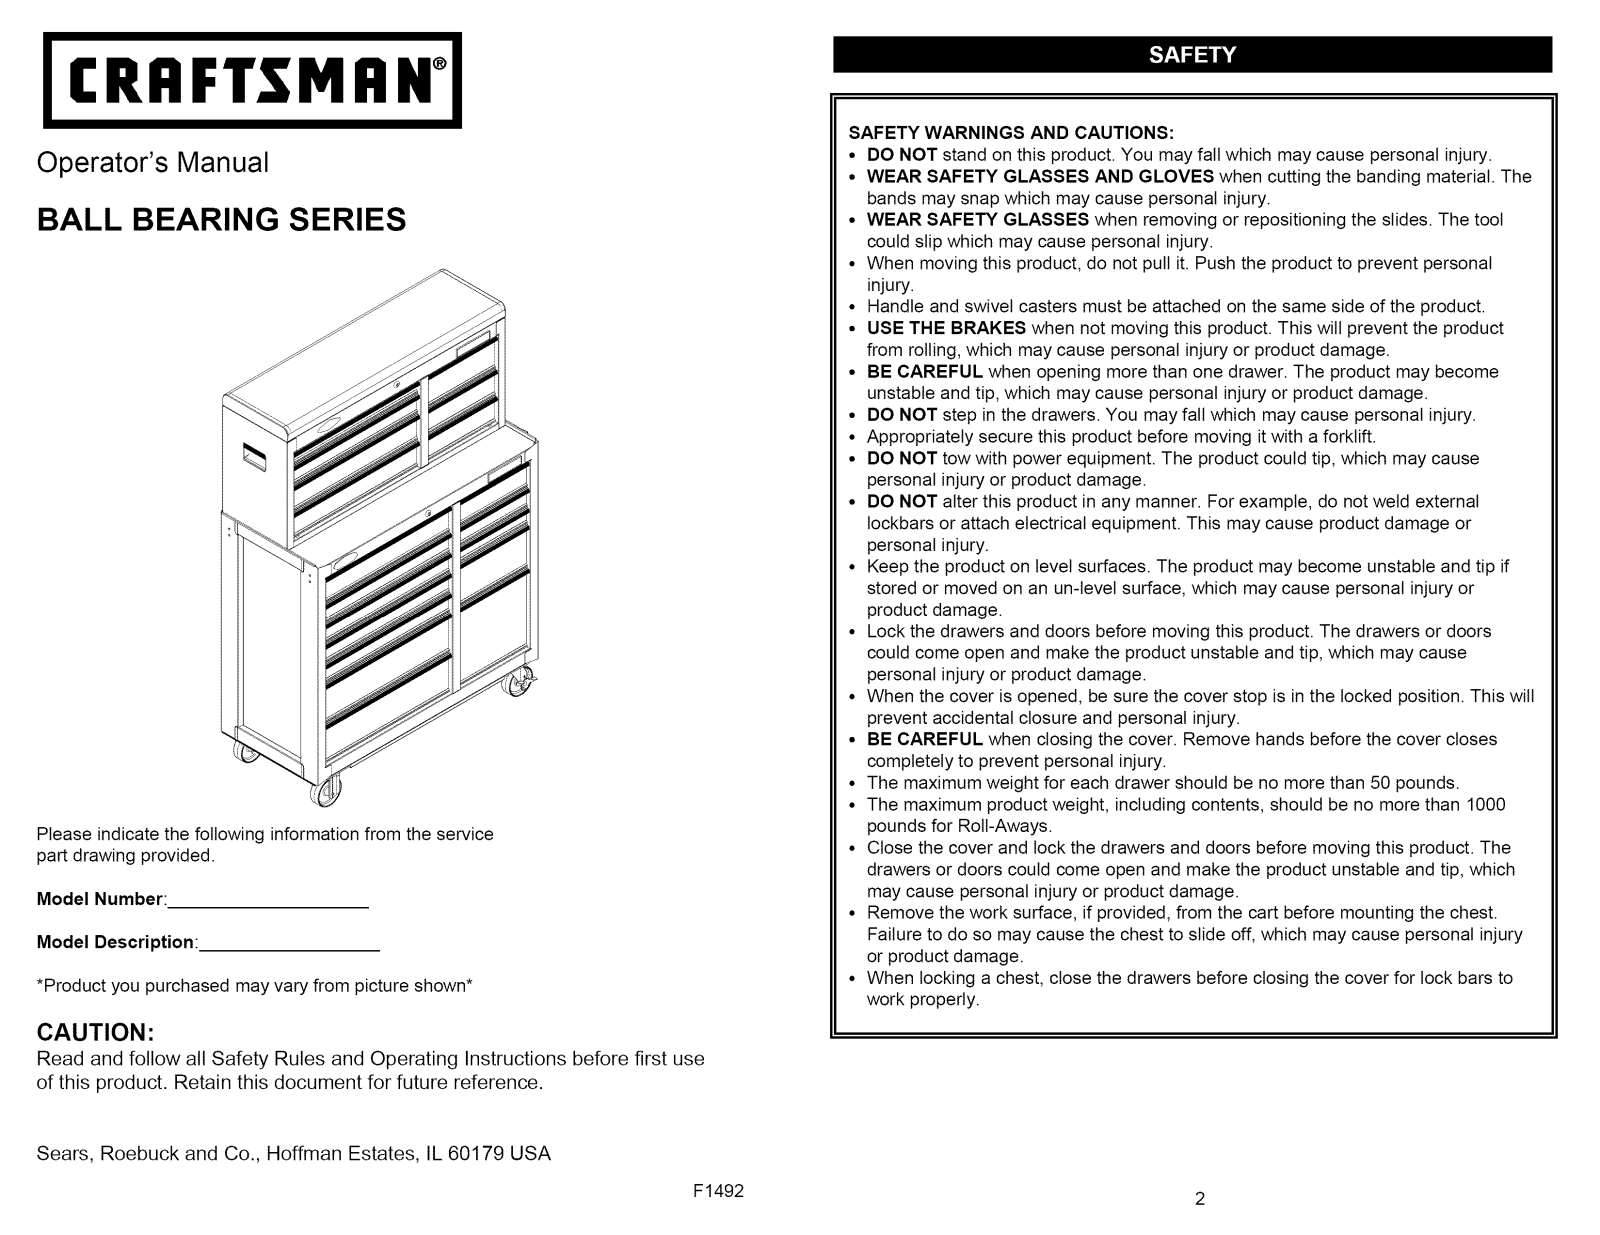 Craftsman Ball Bearing Owner's Manual